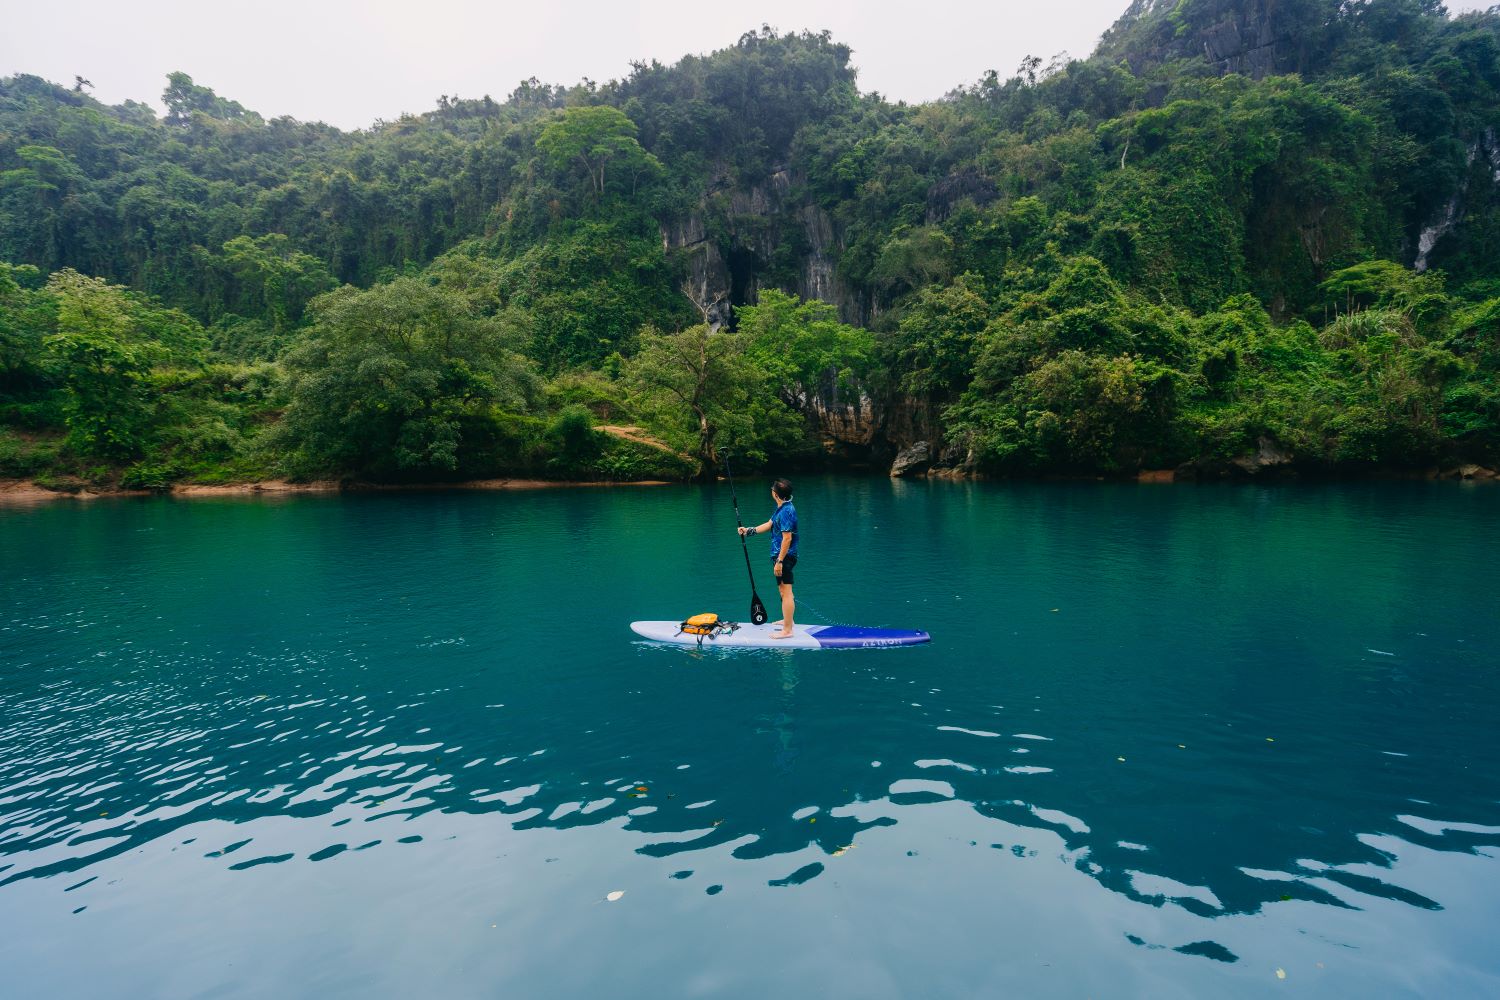 Tại sông Chày, khách du lịch thường tham gia các hoạt động: chèo kayak, bơi lội, trượt zipline,...